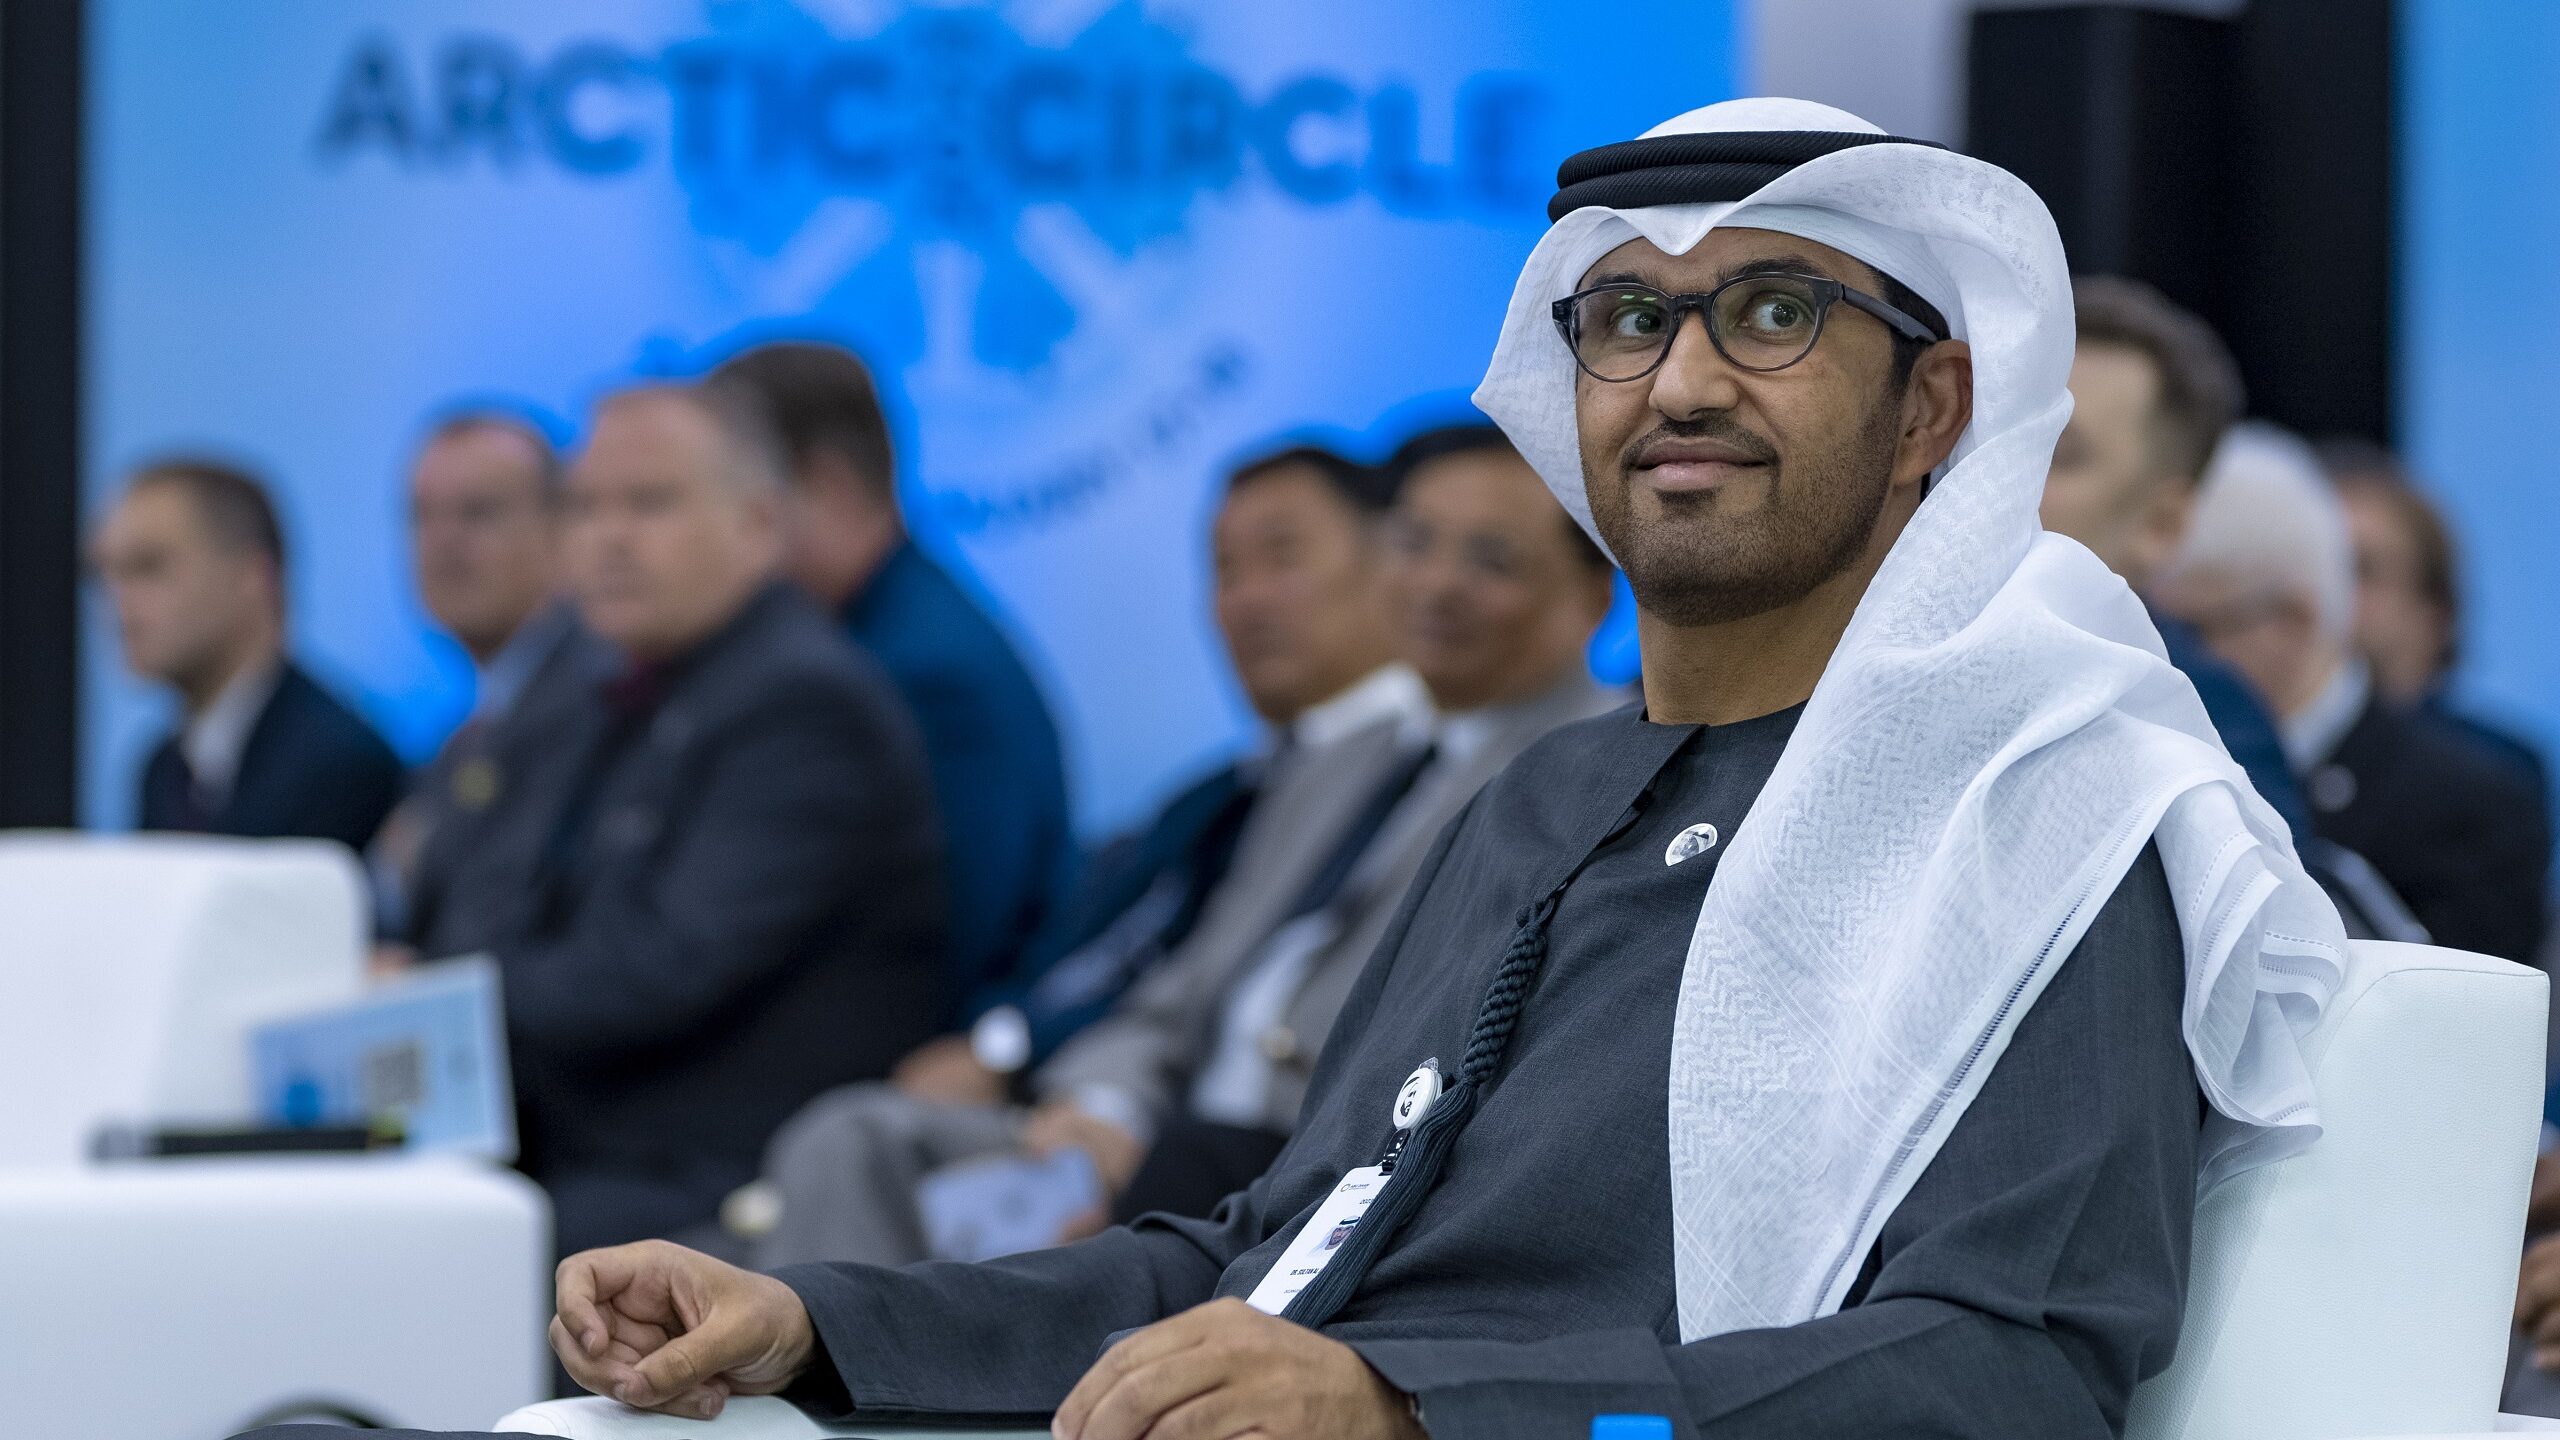 US, EU Representatives Call To Remove UAE Oil Company CEO as UN Climate Conference Chair